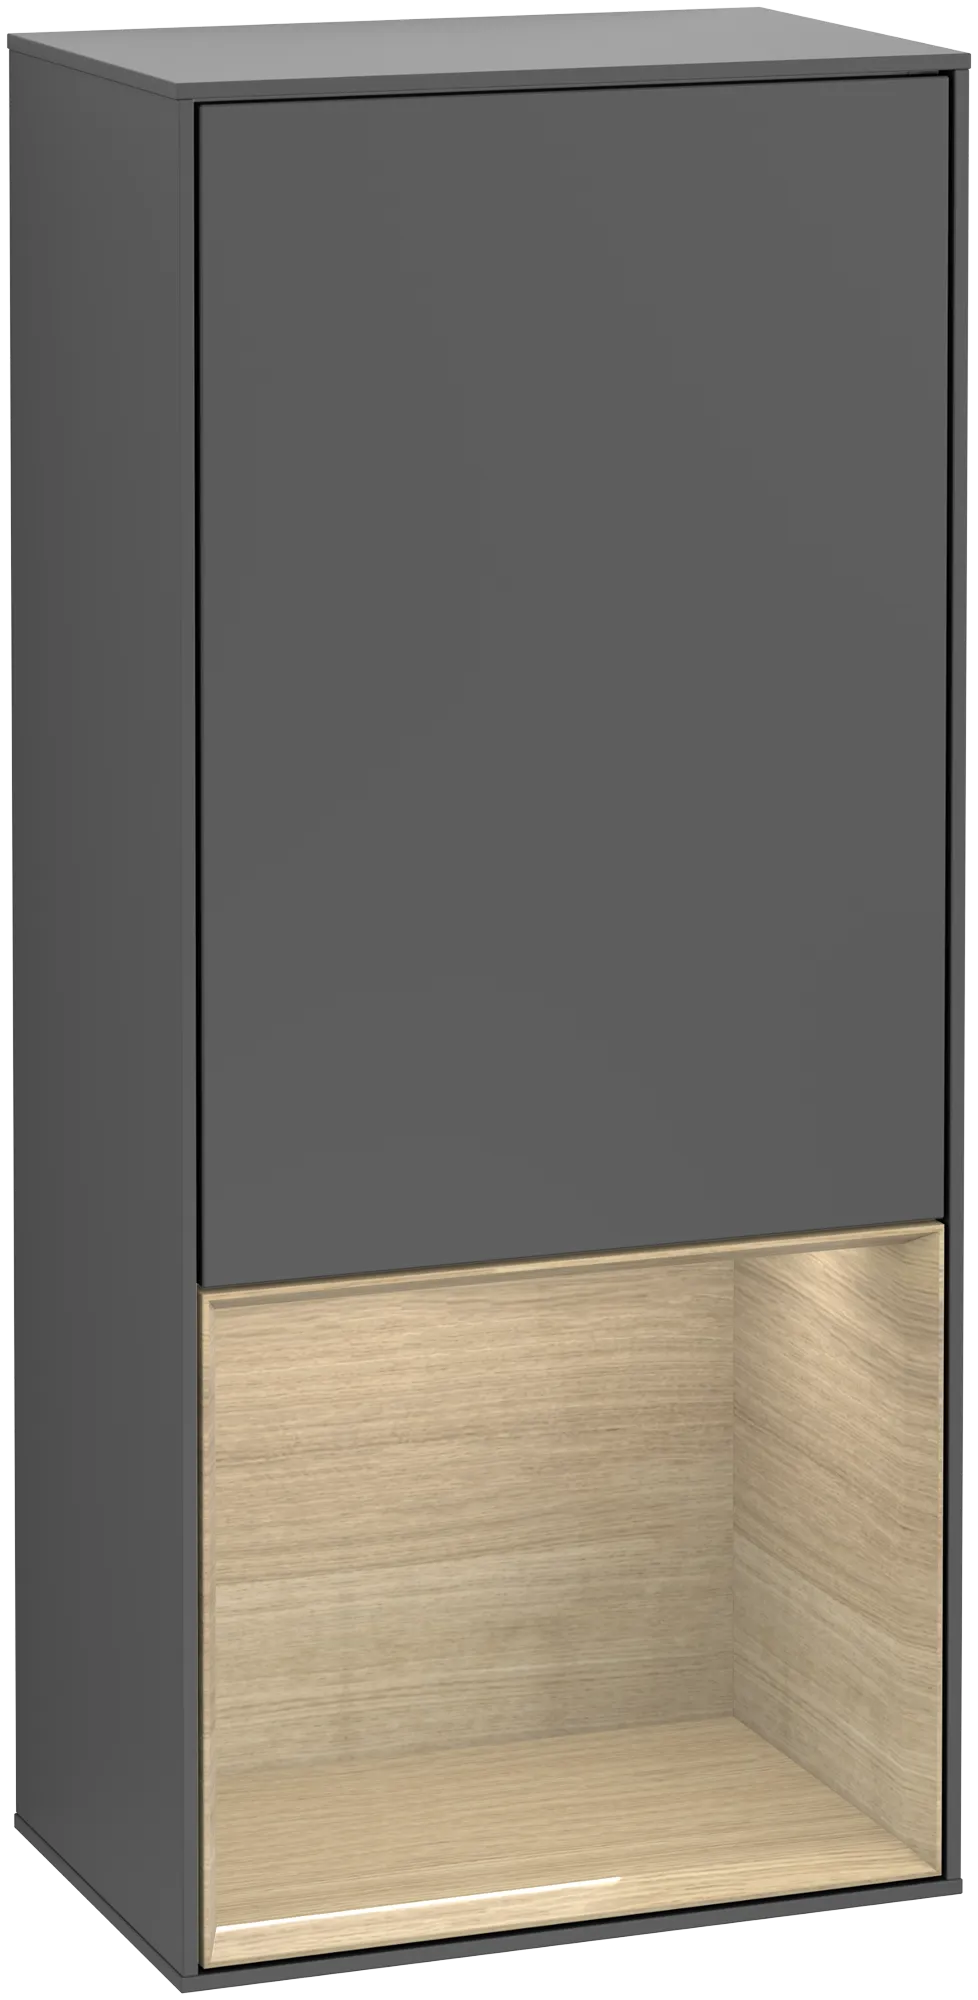 Bild von VILLEROY BOCH Finion Seitenschrank, mit Beleuchtung, 1 Tür, 418 x 936 x 270 mm, Anthracite Matt Lacquer / Oak Veneer #G540PCGK